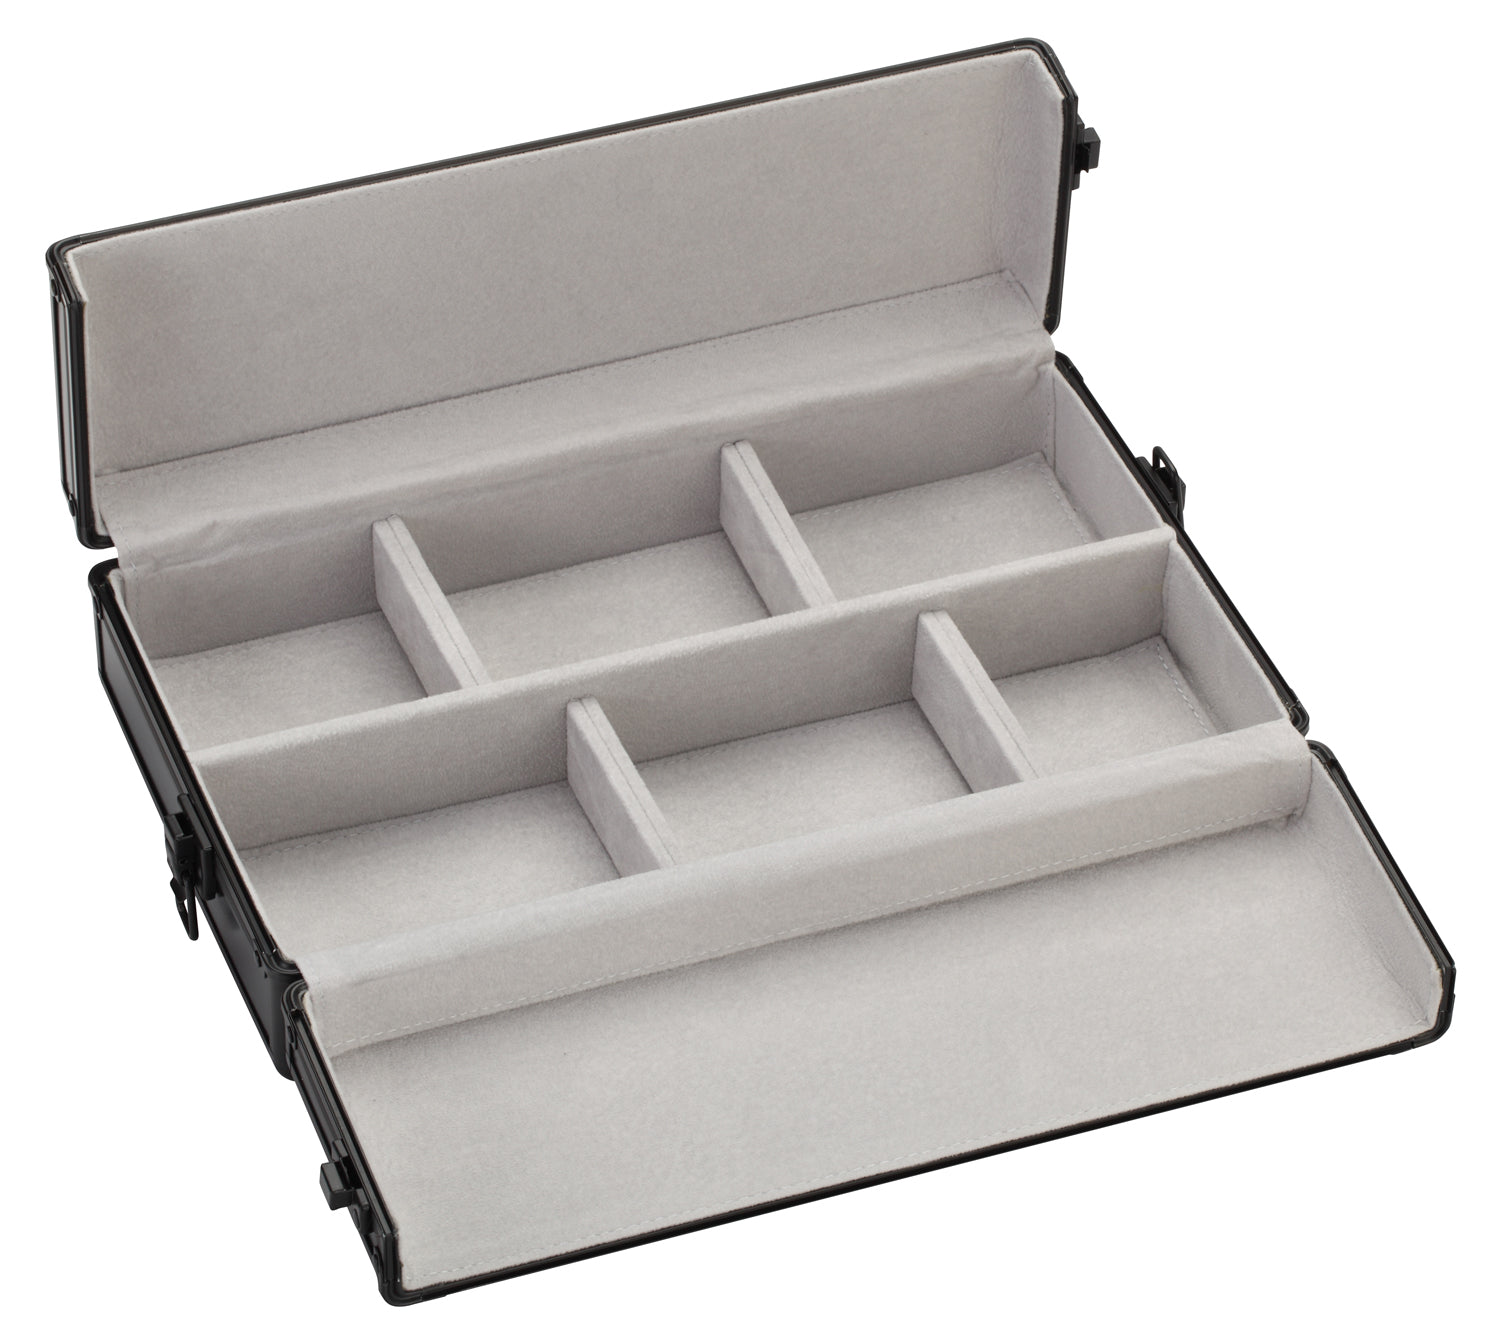 Premium Black Aluminum Parcel Parcel Boxes, 12" L x 4.25" W